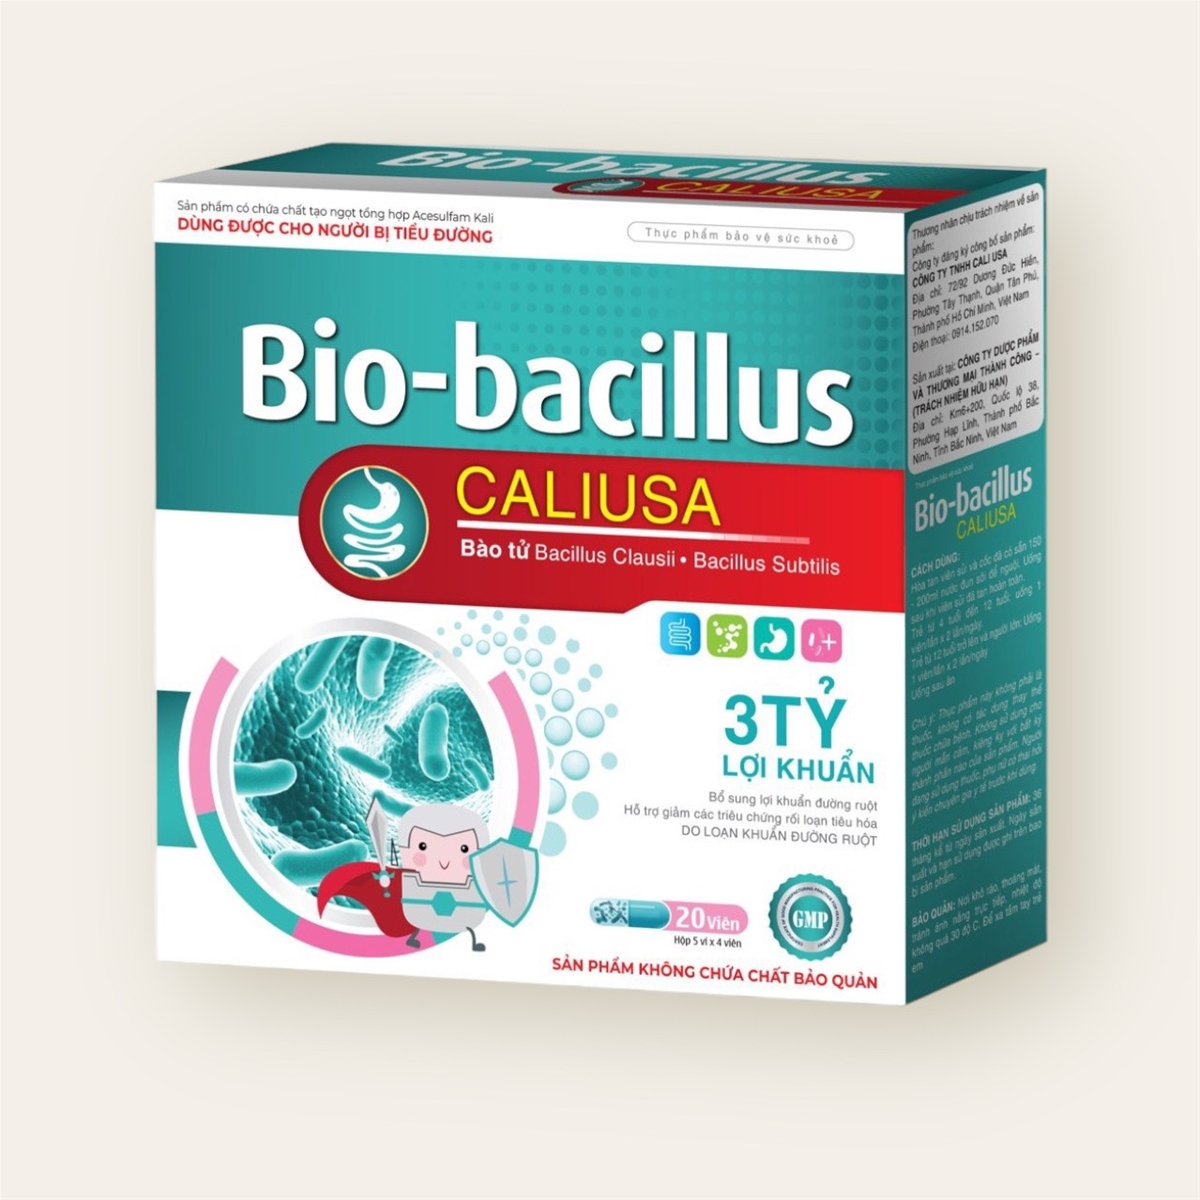 Bổ sung 3 tỷ lợi khuẩn cho đường ruột với Bio-bacillus CALIUSA